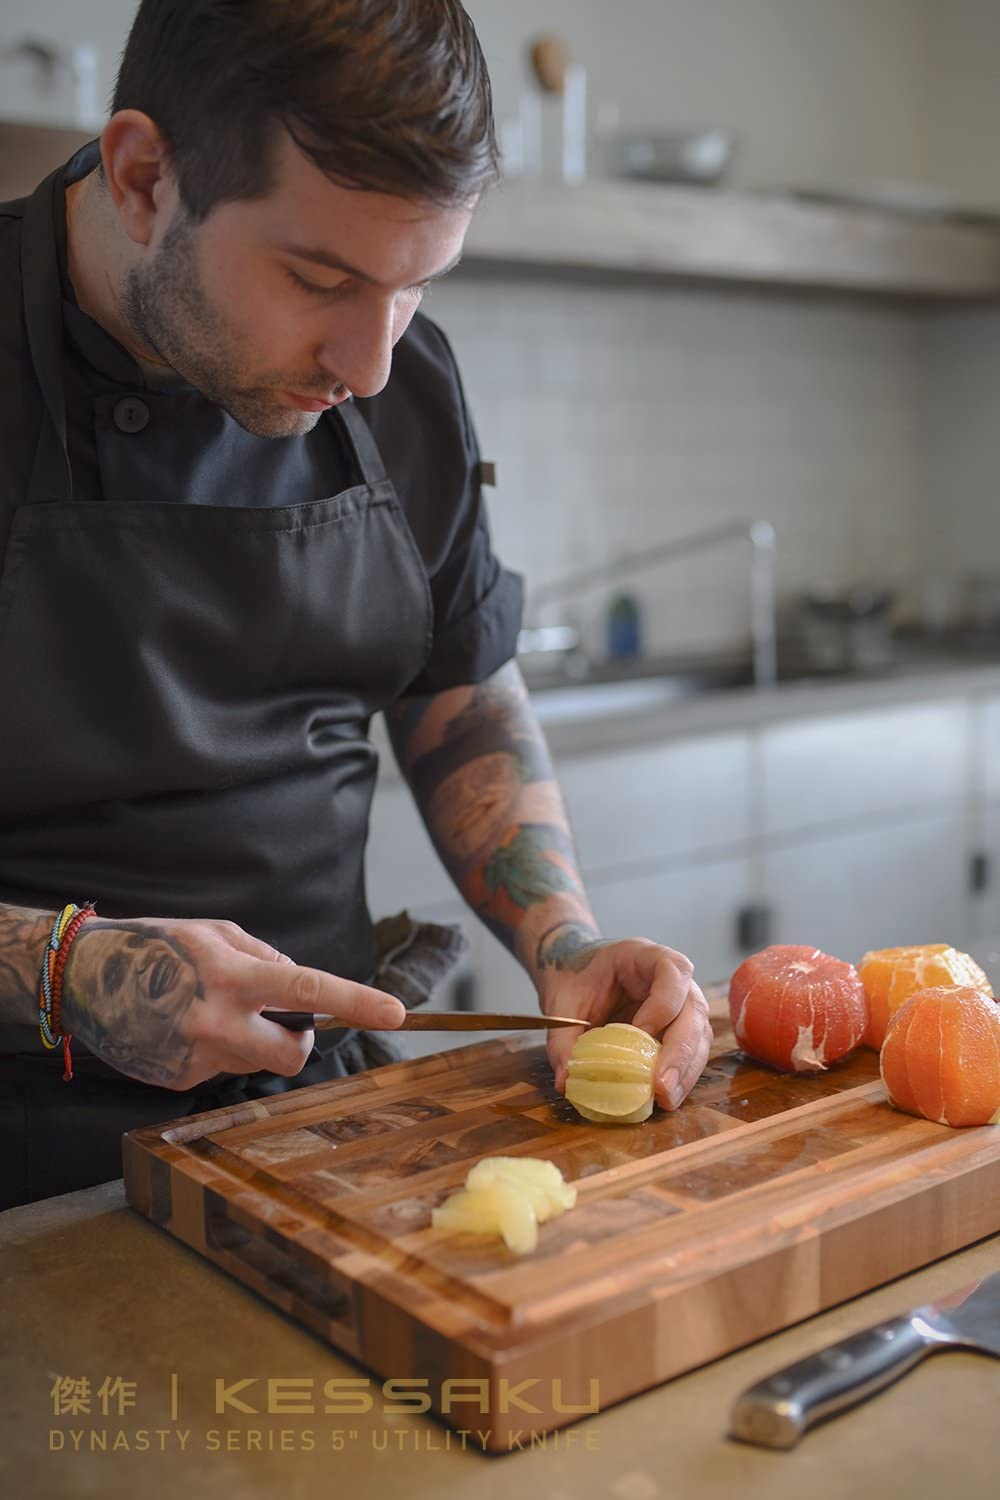 A chef makes a unique design with a lemon